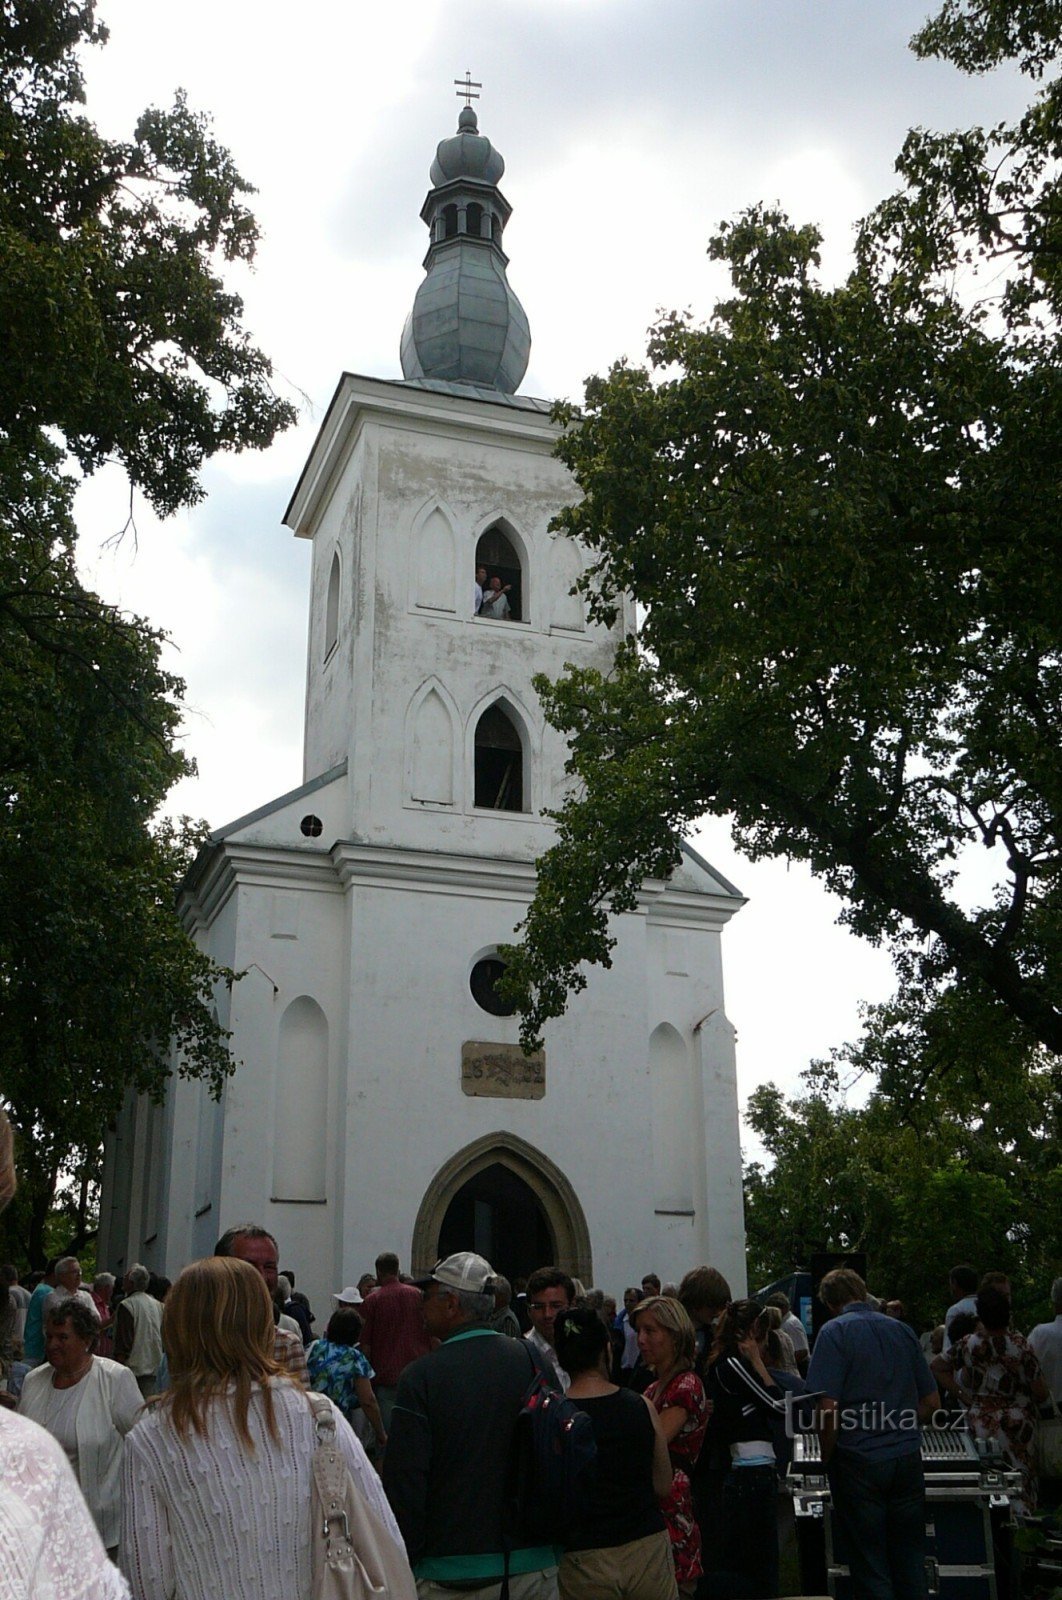 La colina cerca de la iglesia de St. Jakuba nad Ivančicemi es una peregrinación llena de gente